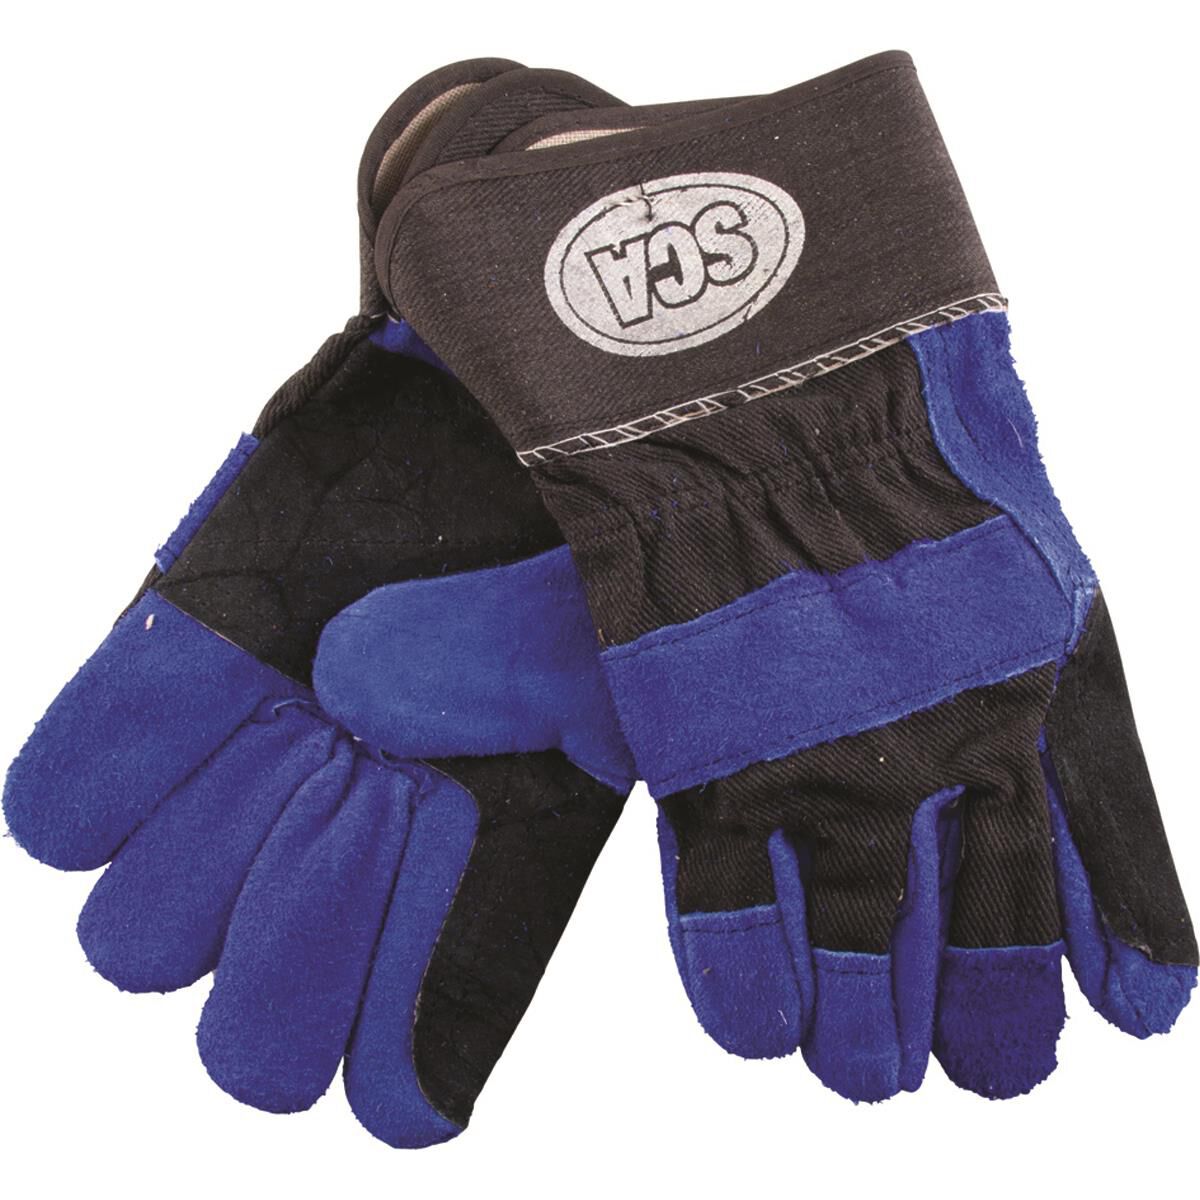 SCA Welding Gloves - 10in, , scaau_hi-res